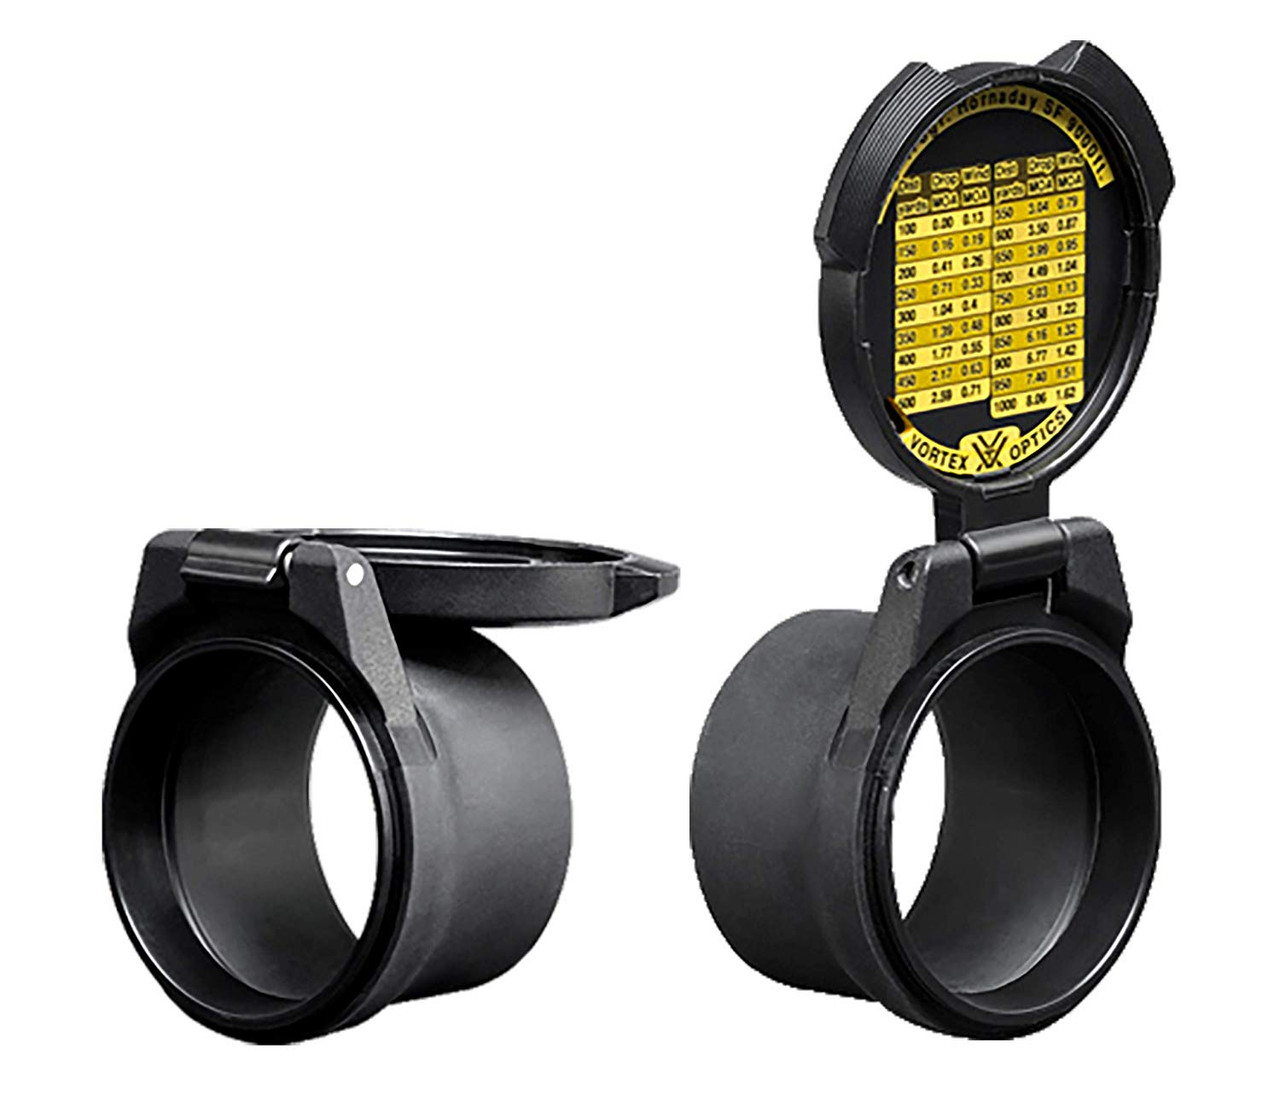 Vortex Optics Defender Scope Eyepiece and Objective Lens Cover E-10 & O-40